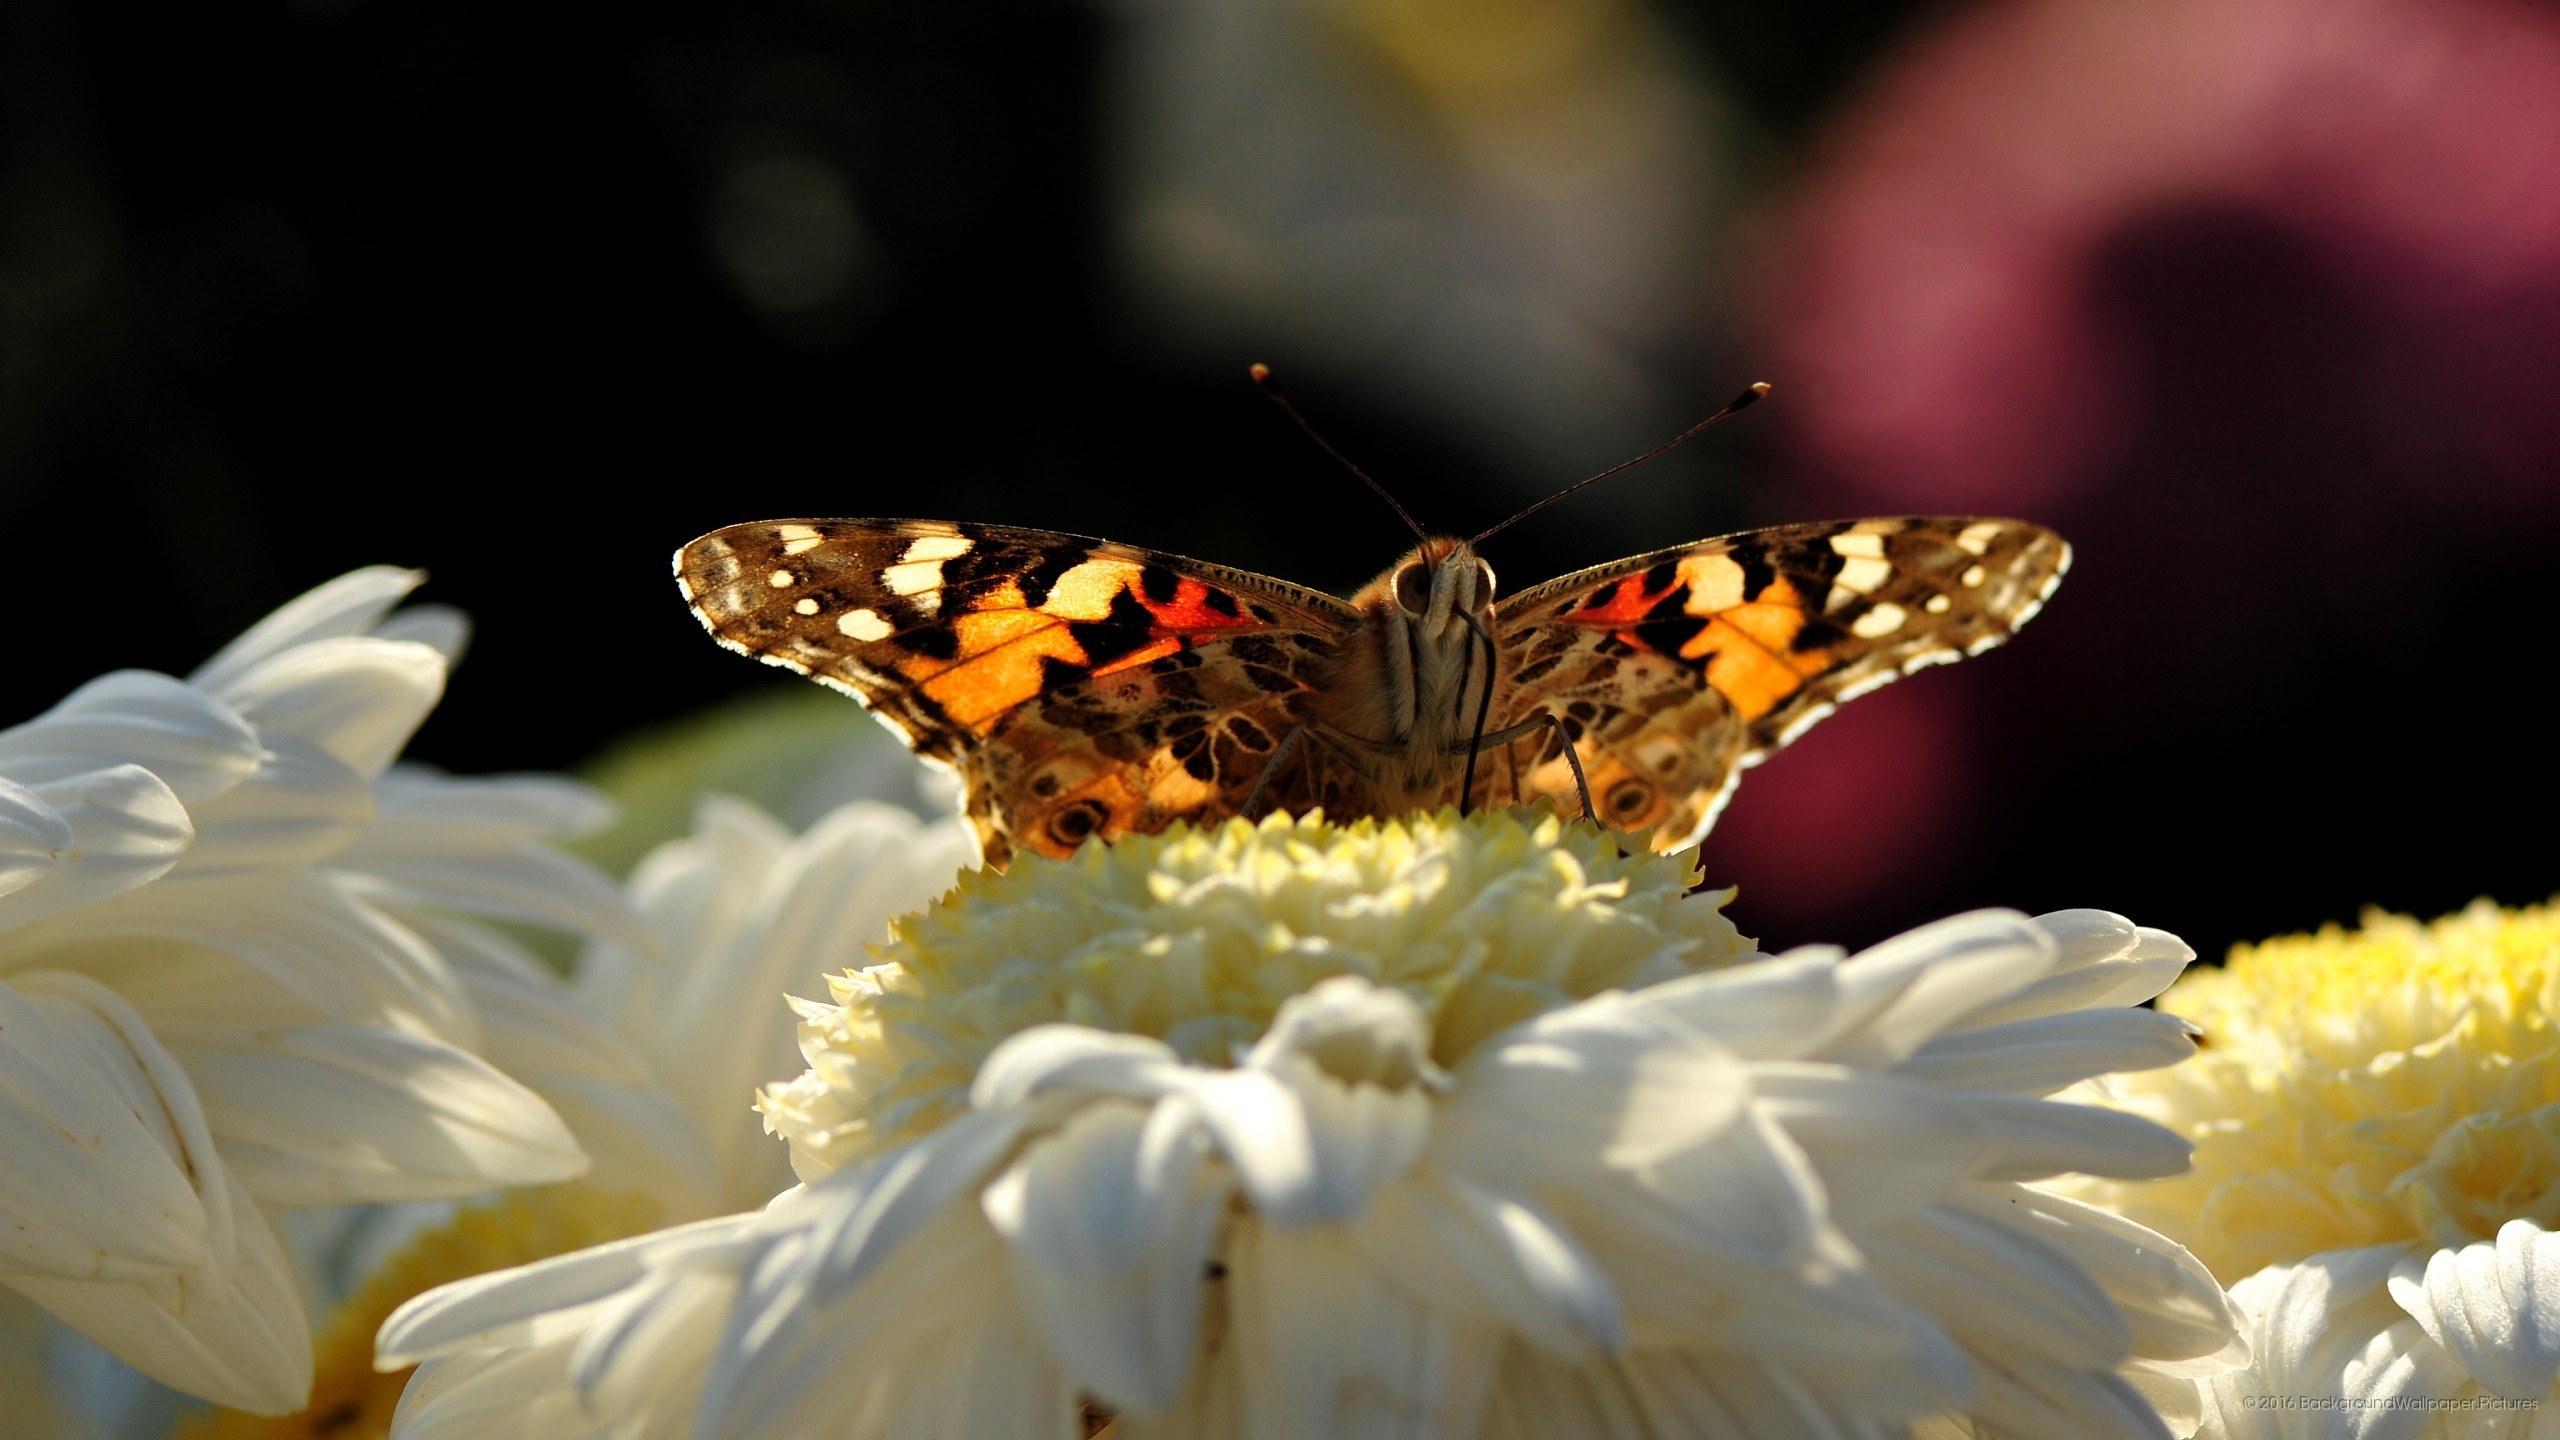 letv fond d'écran hd,papillons et papillons,papillon,sous genre de cynthia,insecte,dame peinte américaine